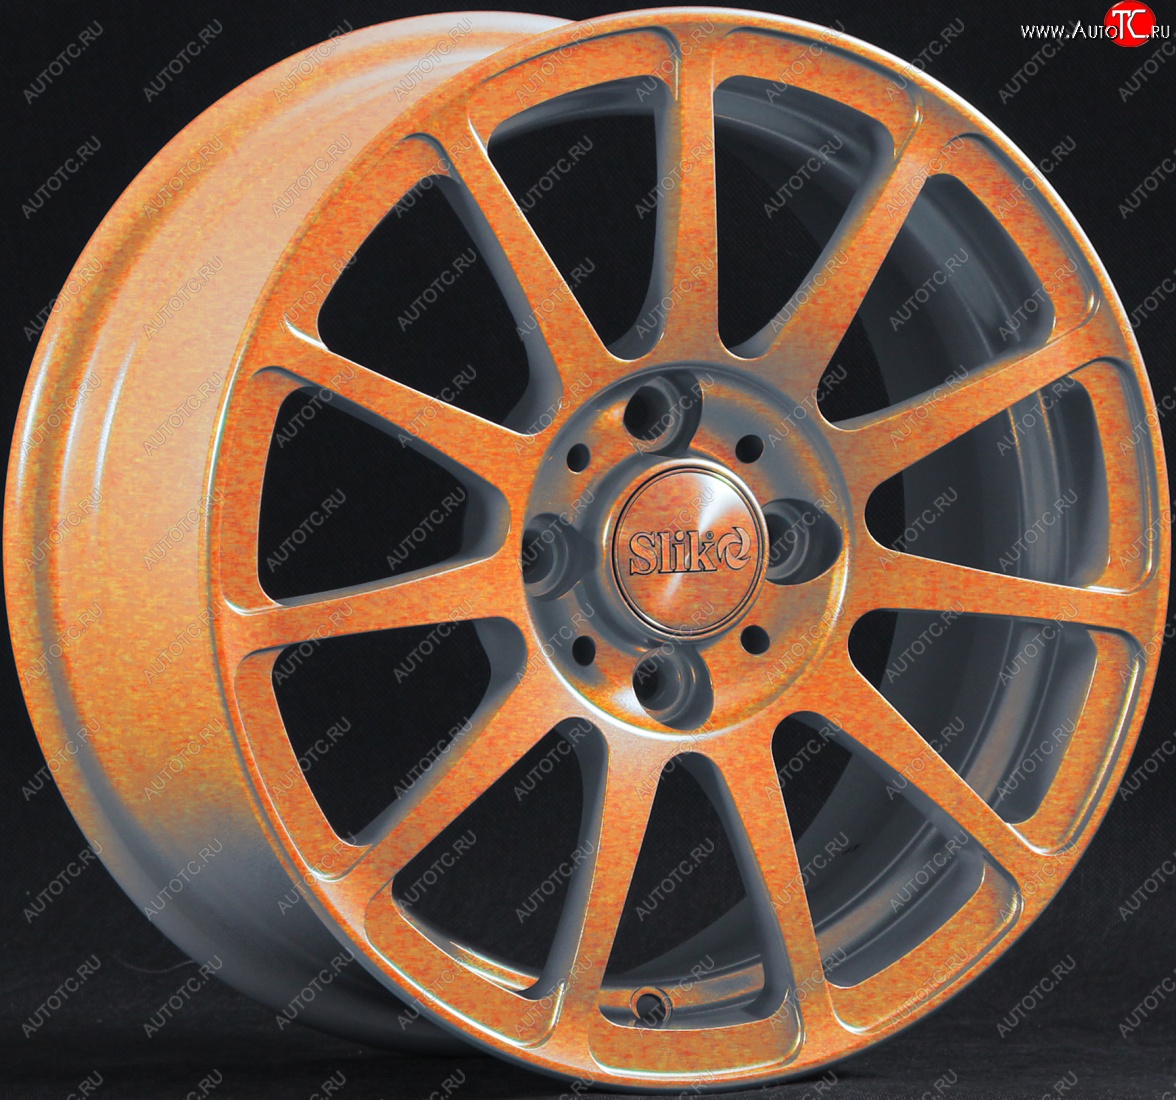 12 849 р. Кованый диск Slik Classik 5.5*14 (Cendy - медно-оранжевый глянцевый) Toyota Echo XP10 седан рестайлинг (2002-2006) 4x100.0xDIA54.1xET45.0 (Цвет: Cendy - медно-оранжевый глянцевый)